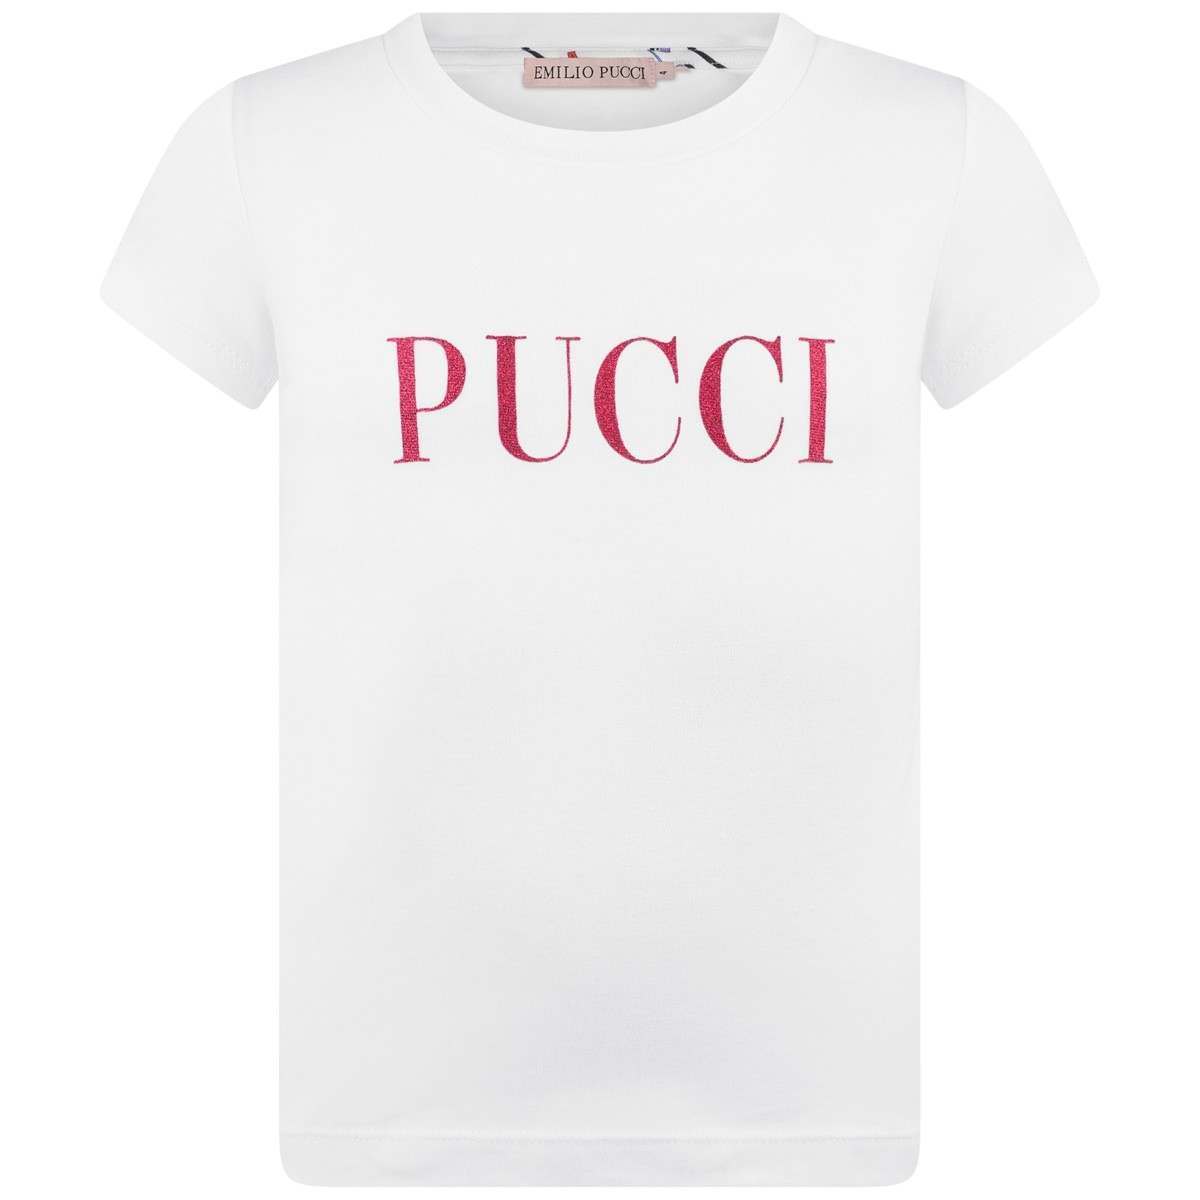 Red Glitter Logo - PUCCI Girls White & Red Glitter Logo Top - Emilio Pucci - Designers